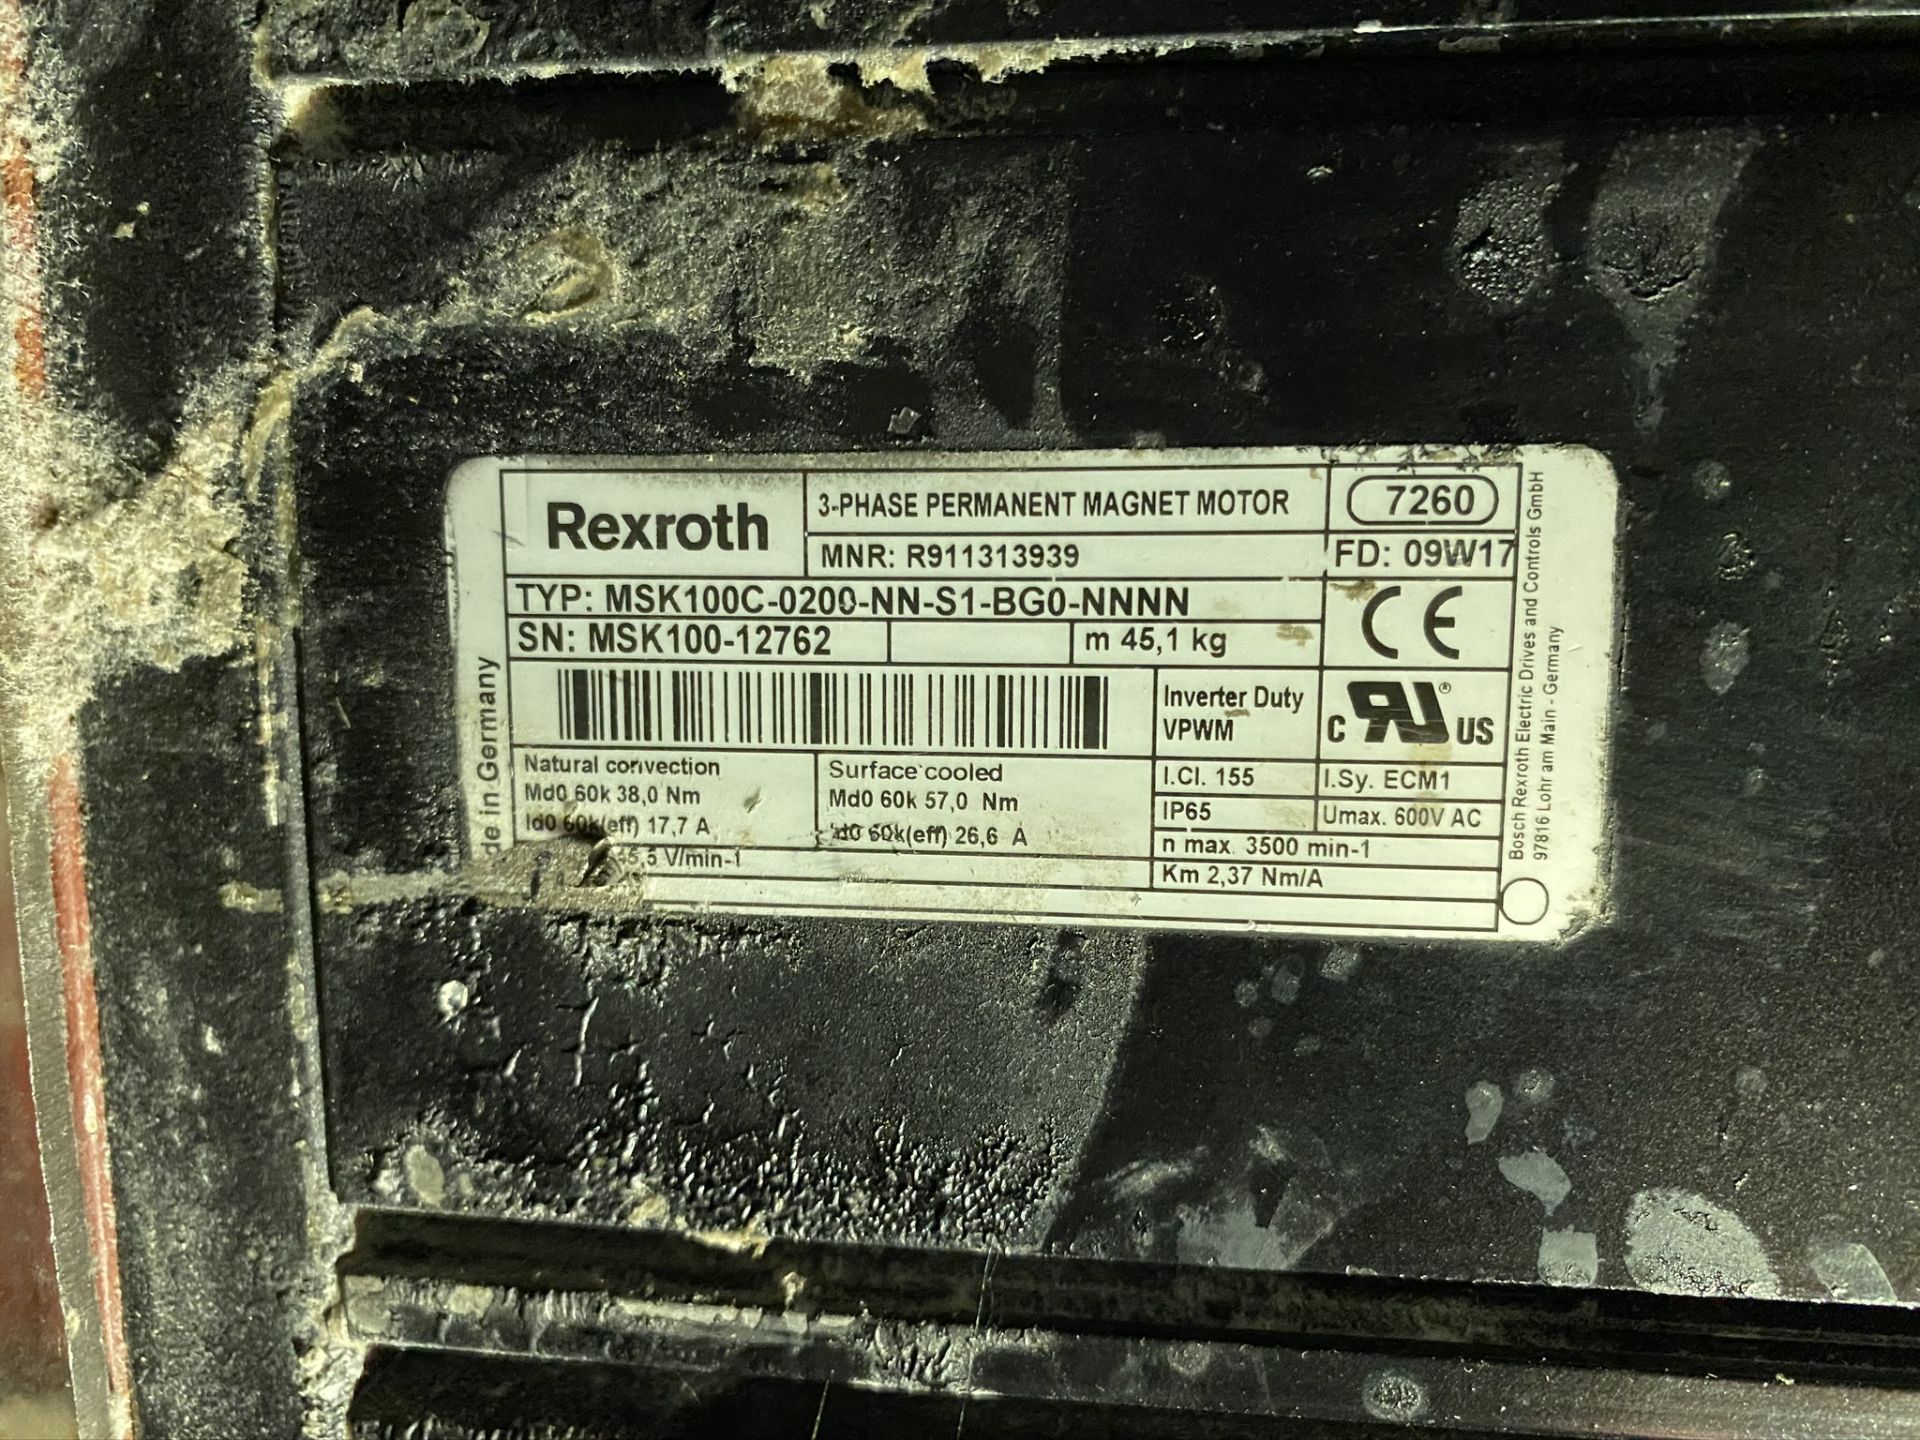 Rexroth 3-phase permanent magnet motor. Typ: MSK100C-0200-NN-S1-BG0-NNNN. S/N: MSK100-12762. (S.F.) - Image 3 of 3